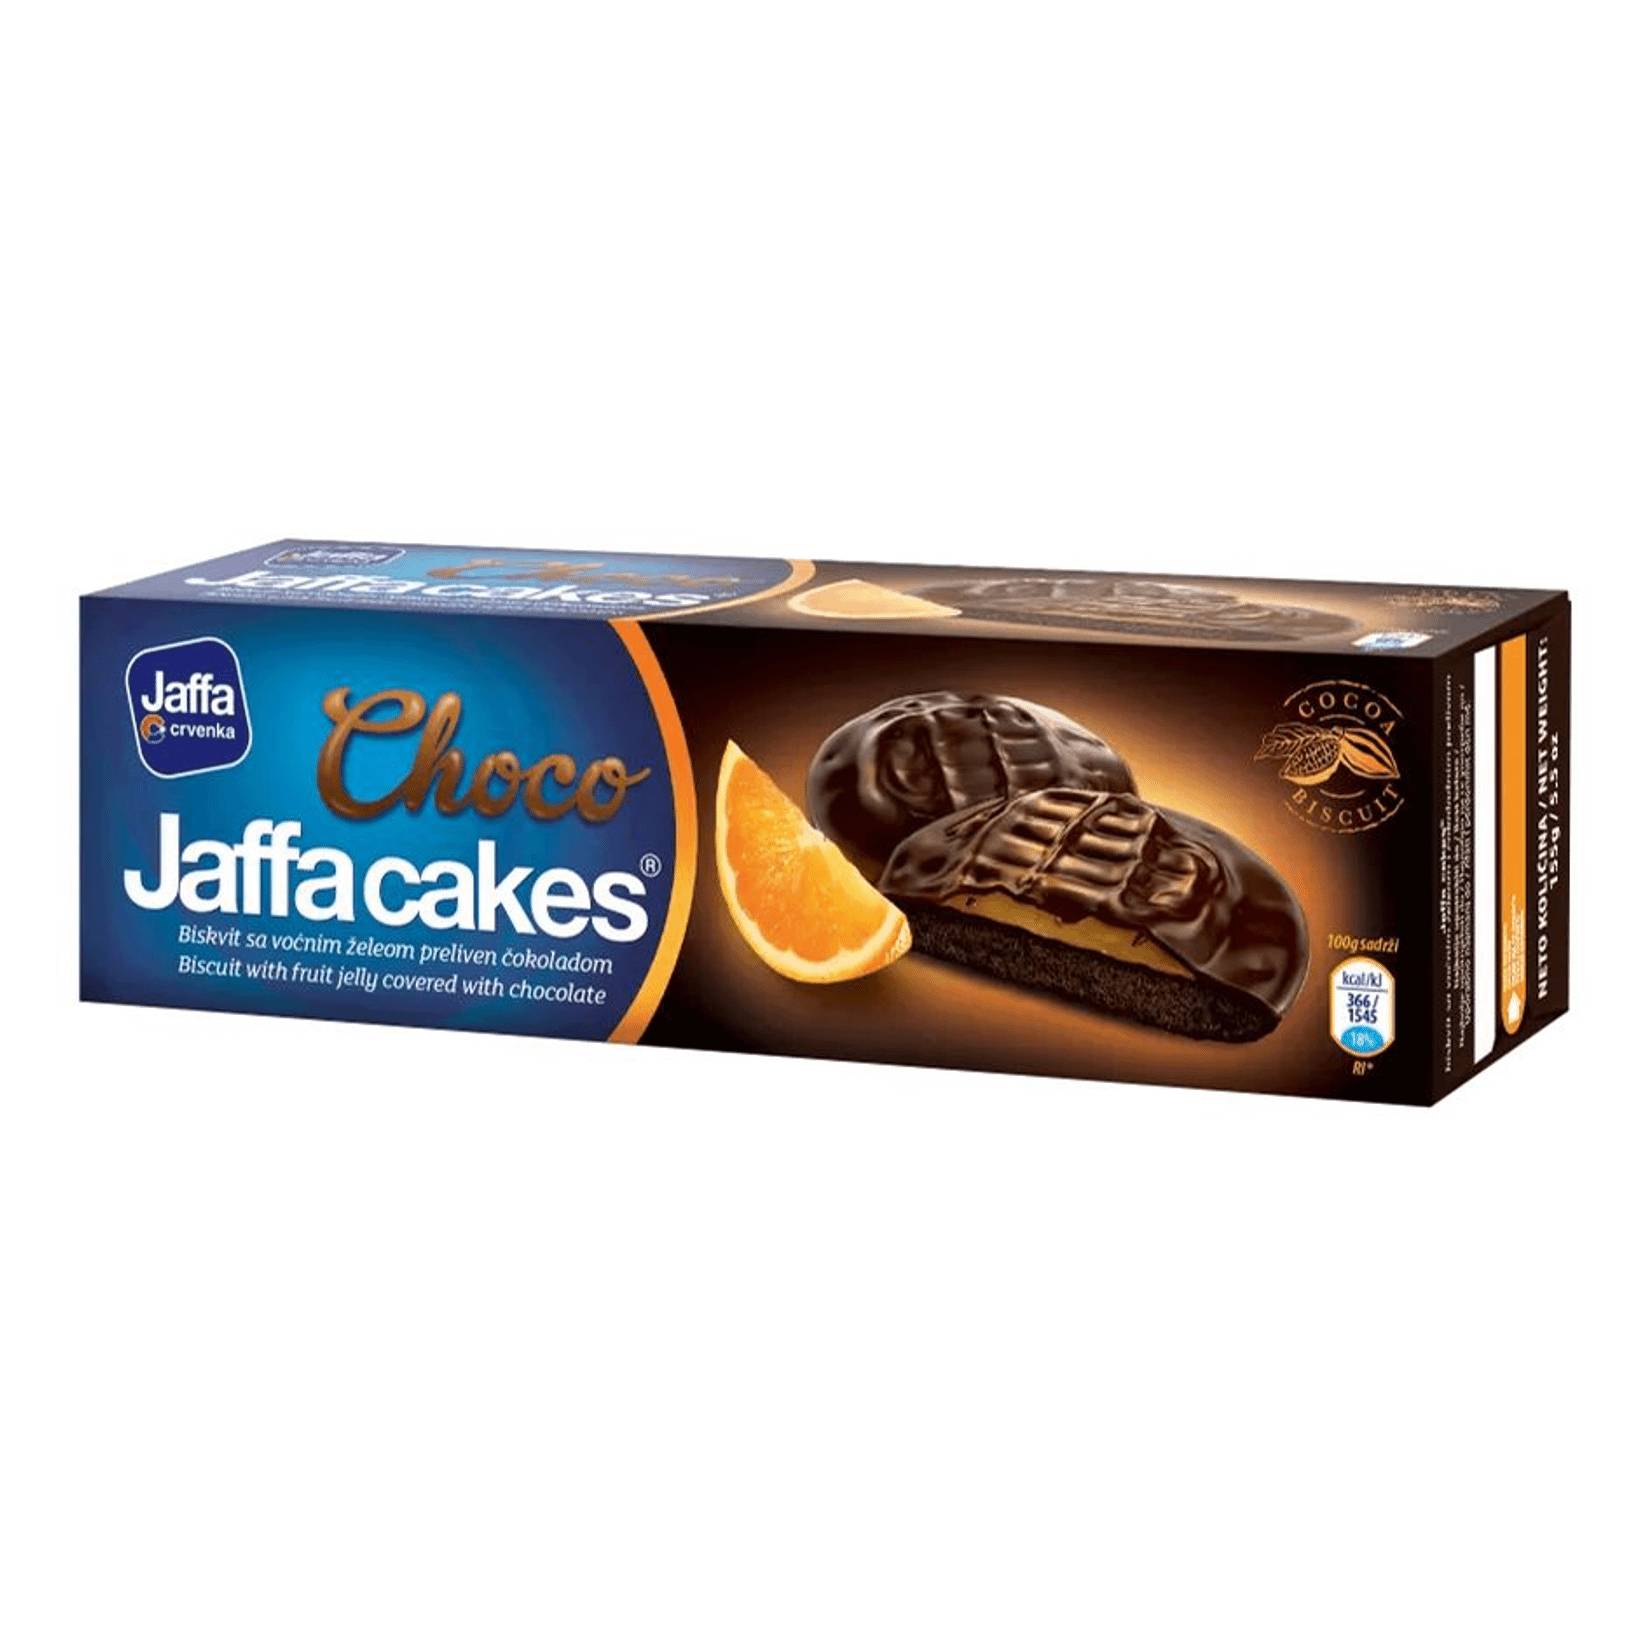 Печенье бисквитное Jaffa апельсин в шоколаде, 158 г печенье бисквитное jaffa crvenka с вишневым желе покрытое шоколадом 155 г